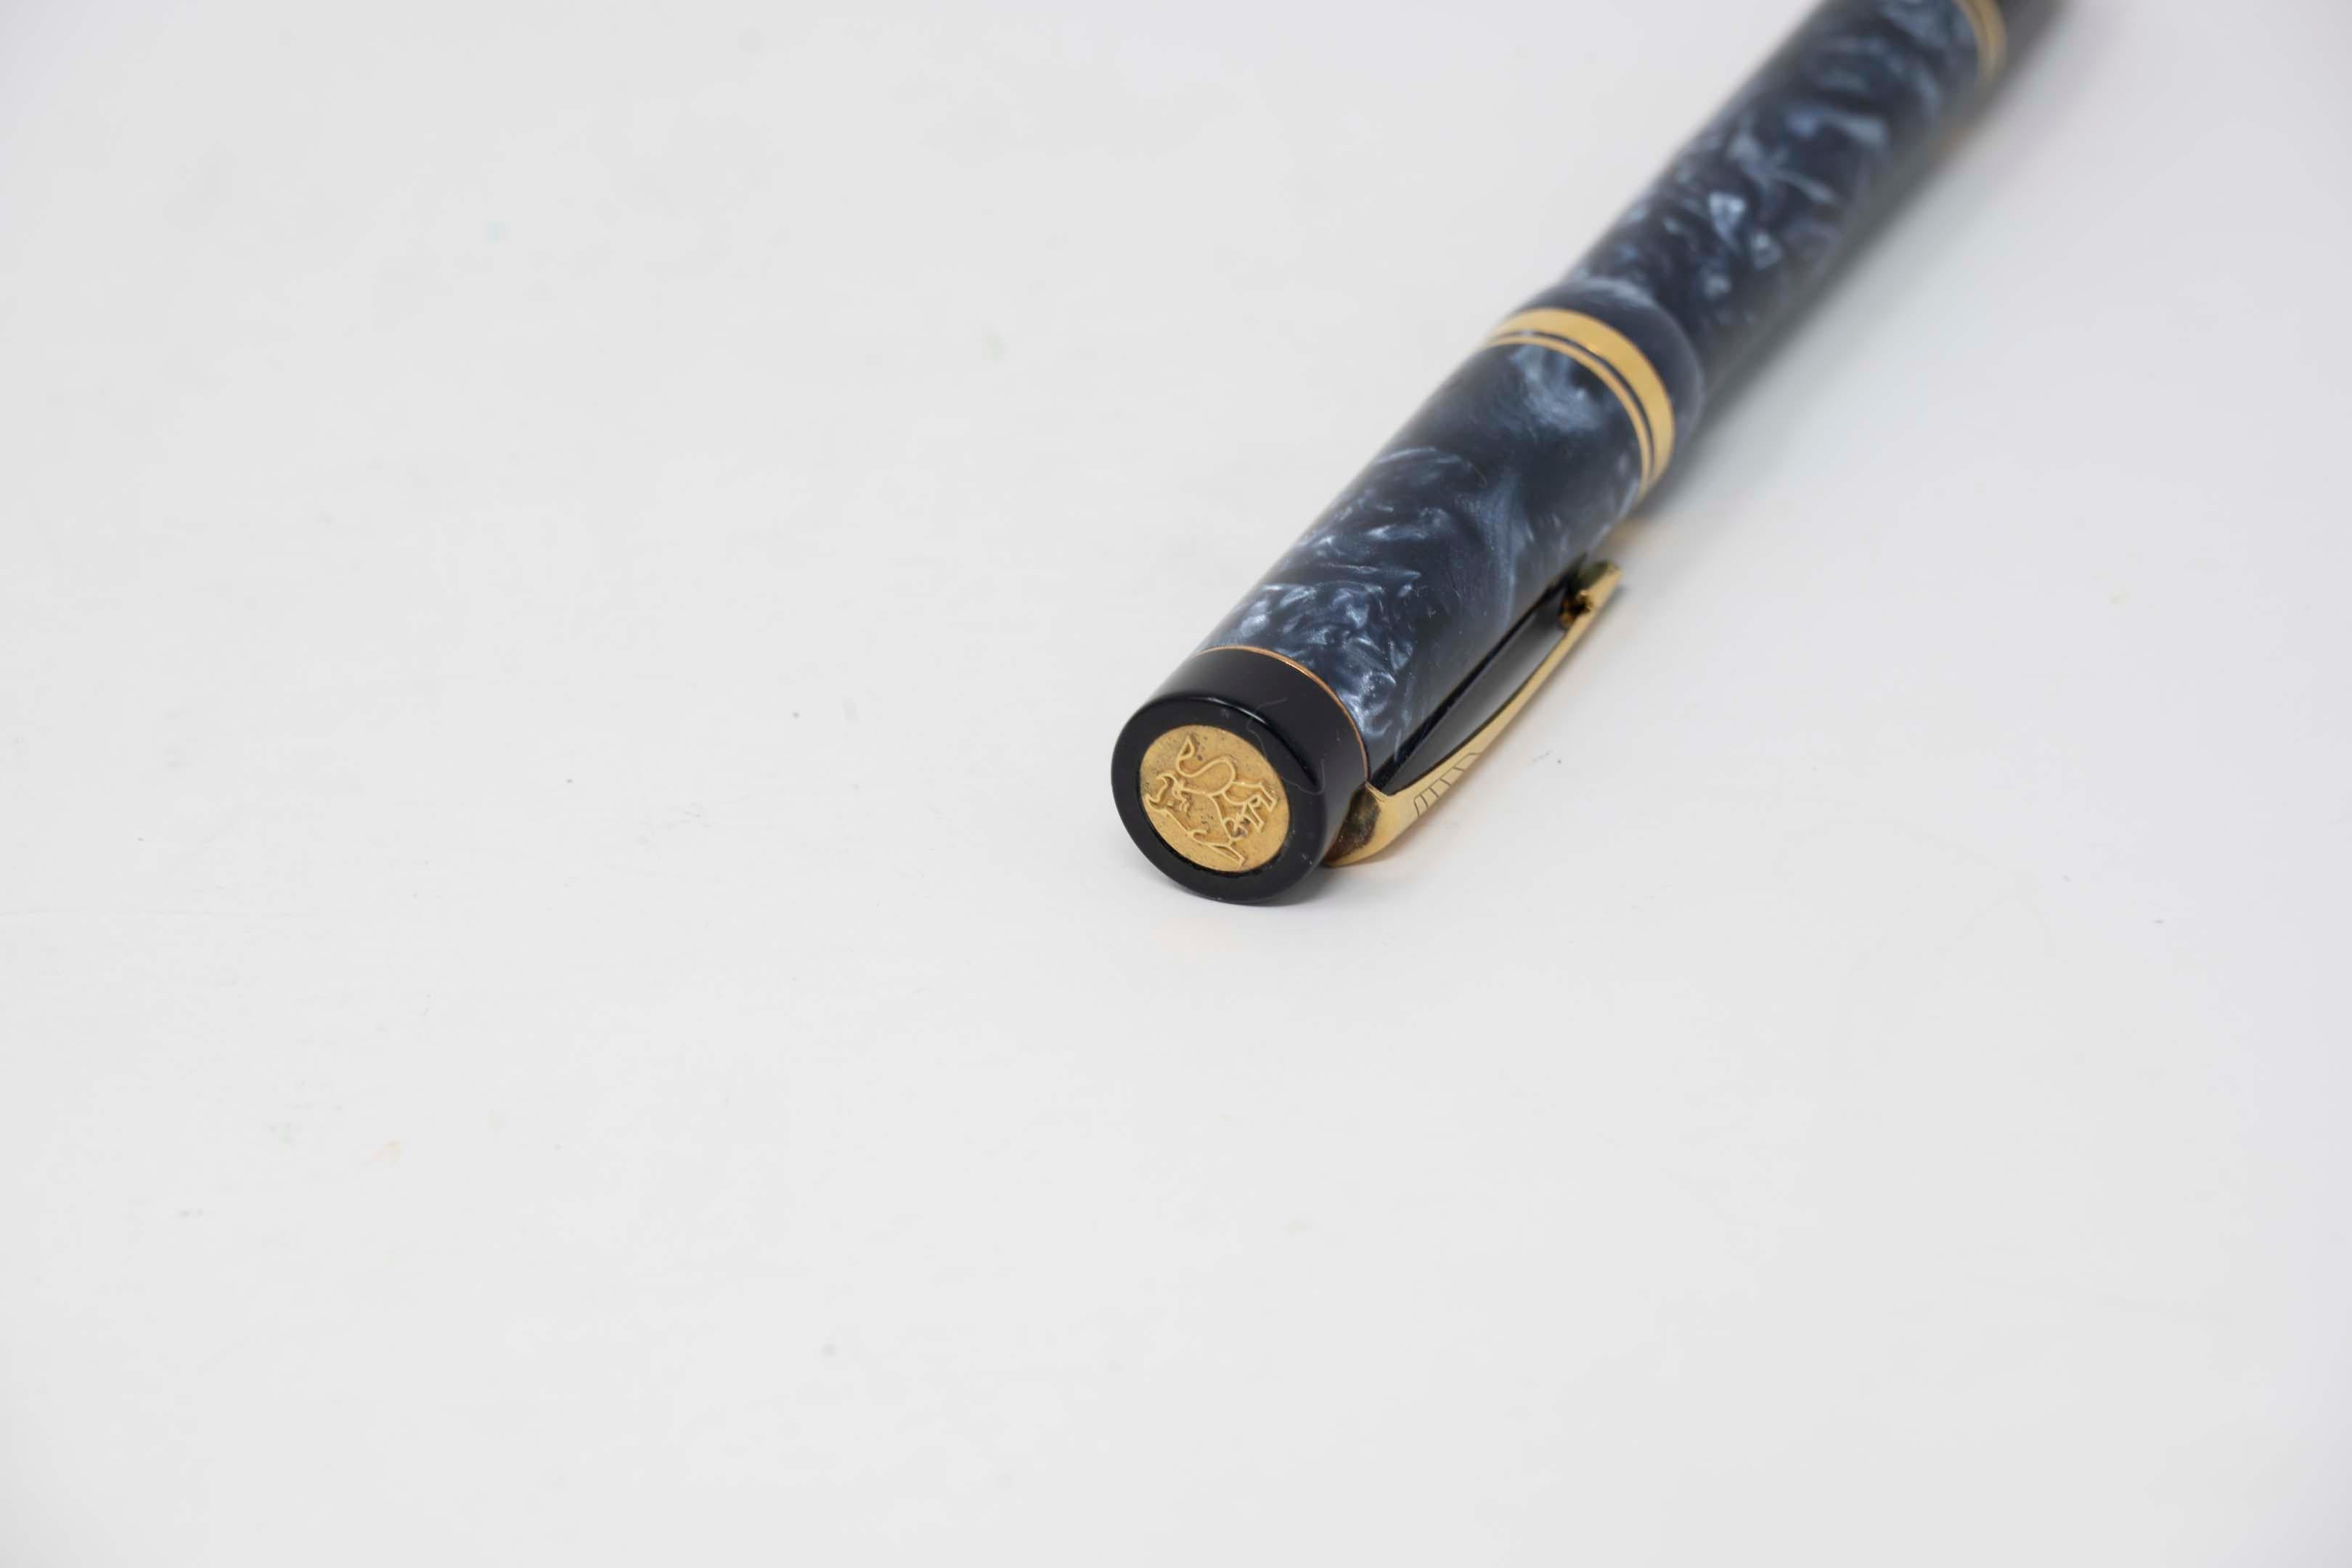 Stylo plume Parker Duofold bleu marbré avec plume or 18k, 13,5 cm de long. Fabricant Parker, fabriqué au Royaume-Uni. Le bouchon présente le motif du taureau doré, en bon état ; la recharge doit être remplacée.
